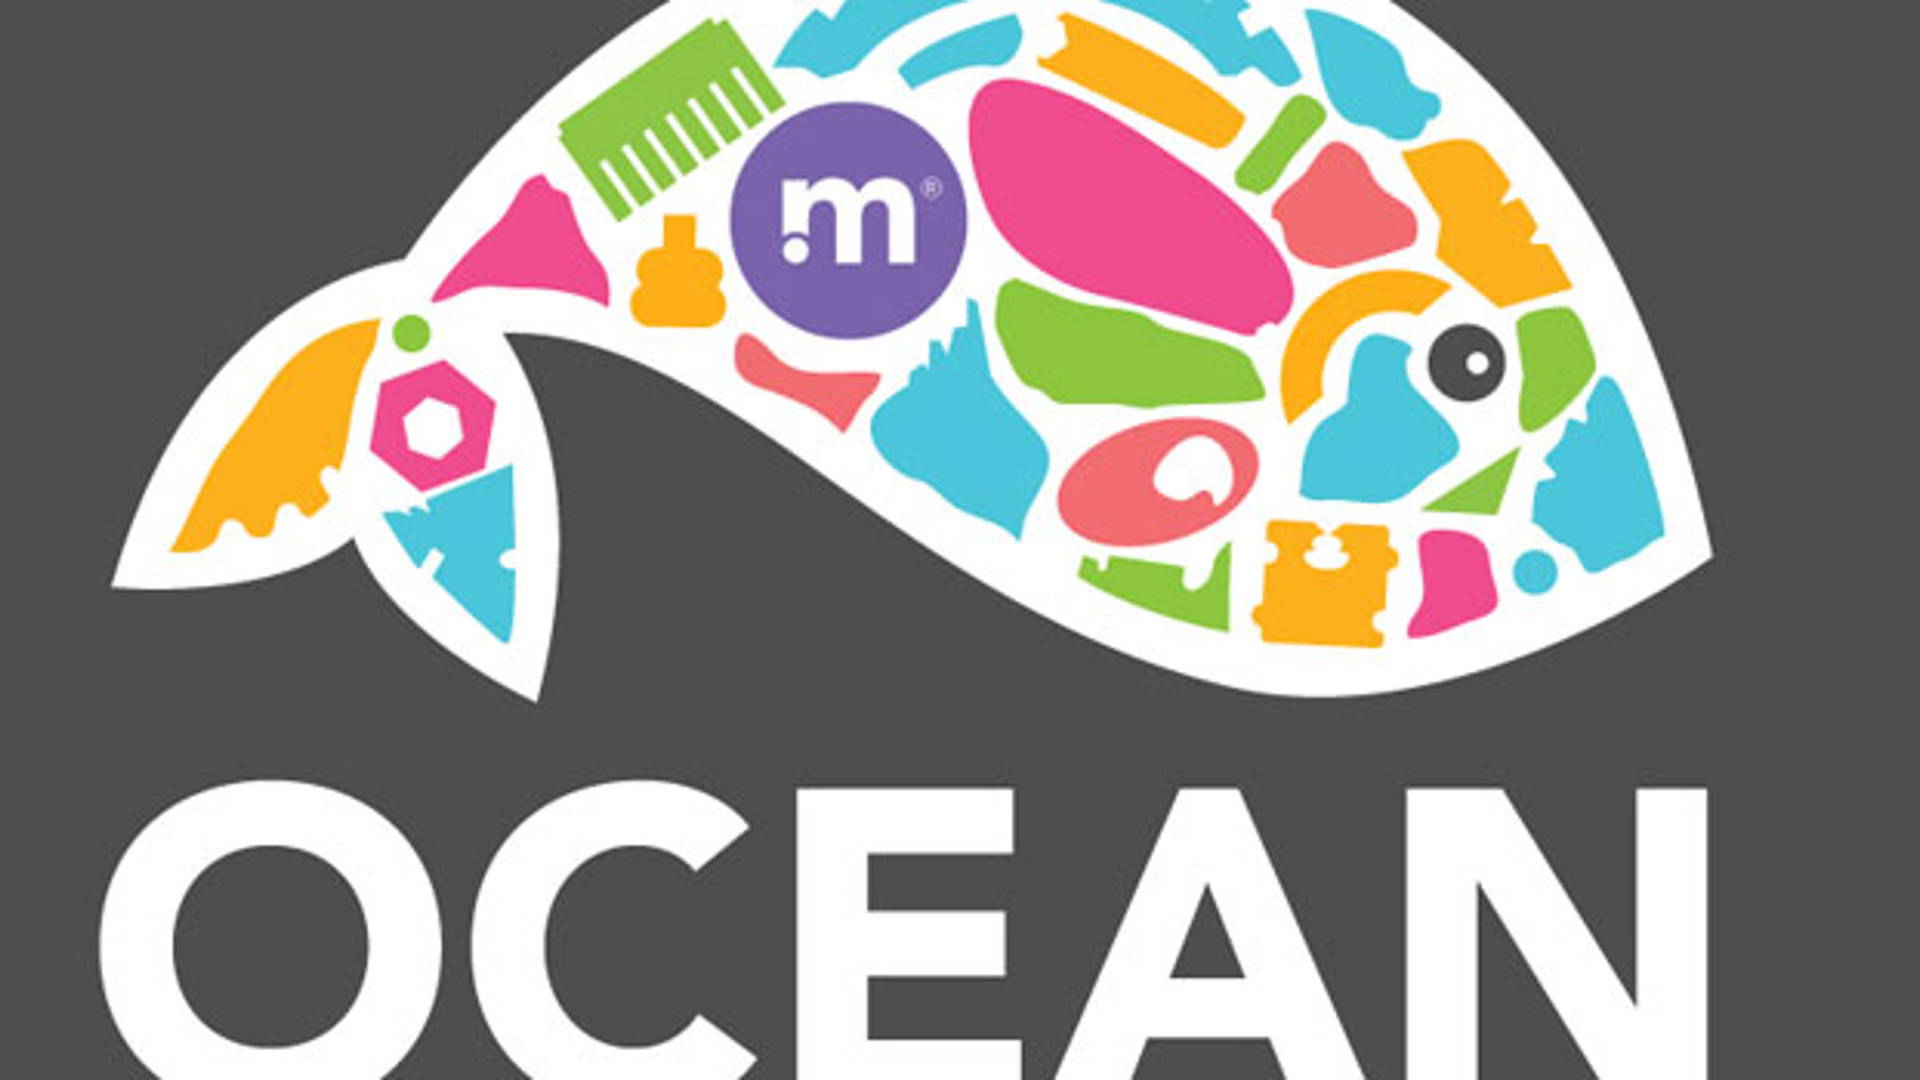 Featured image for Method Ocean Plastic Initiative